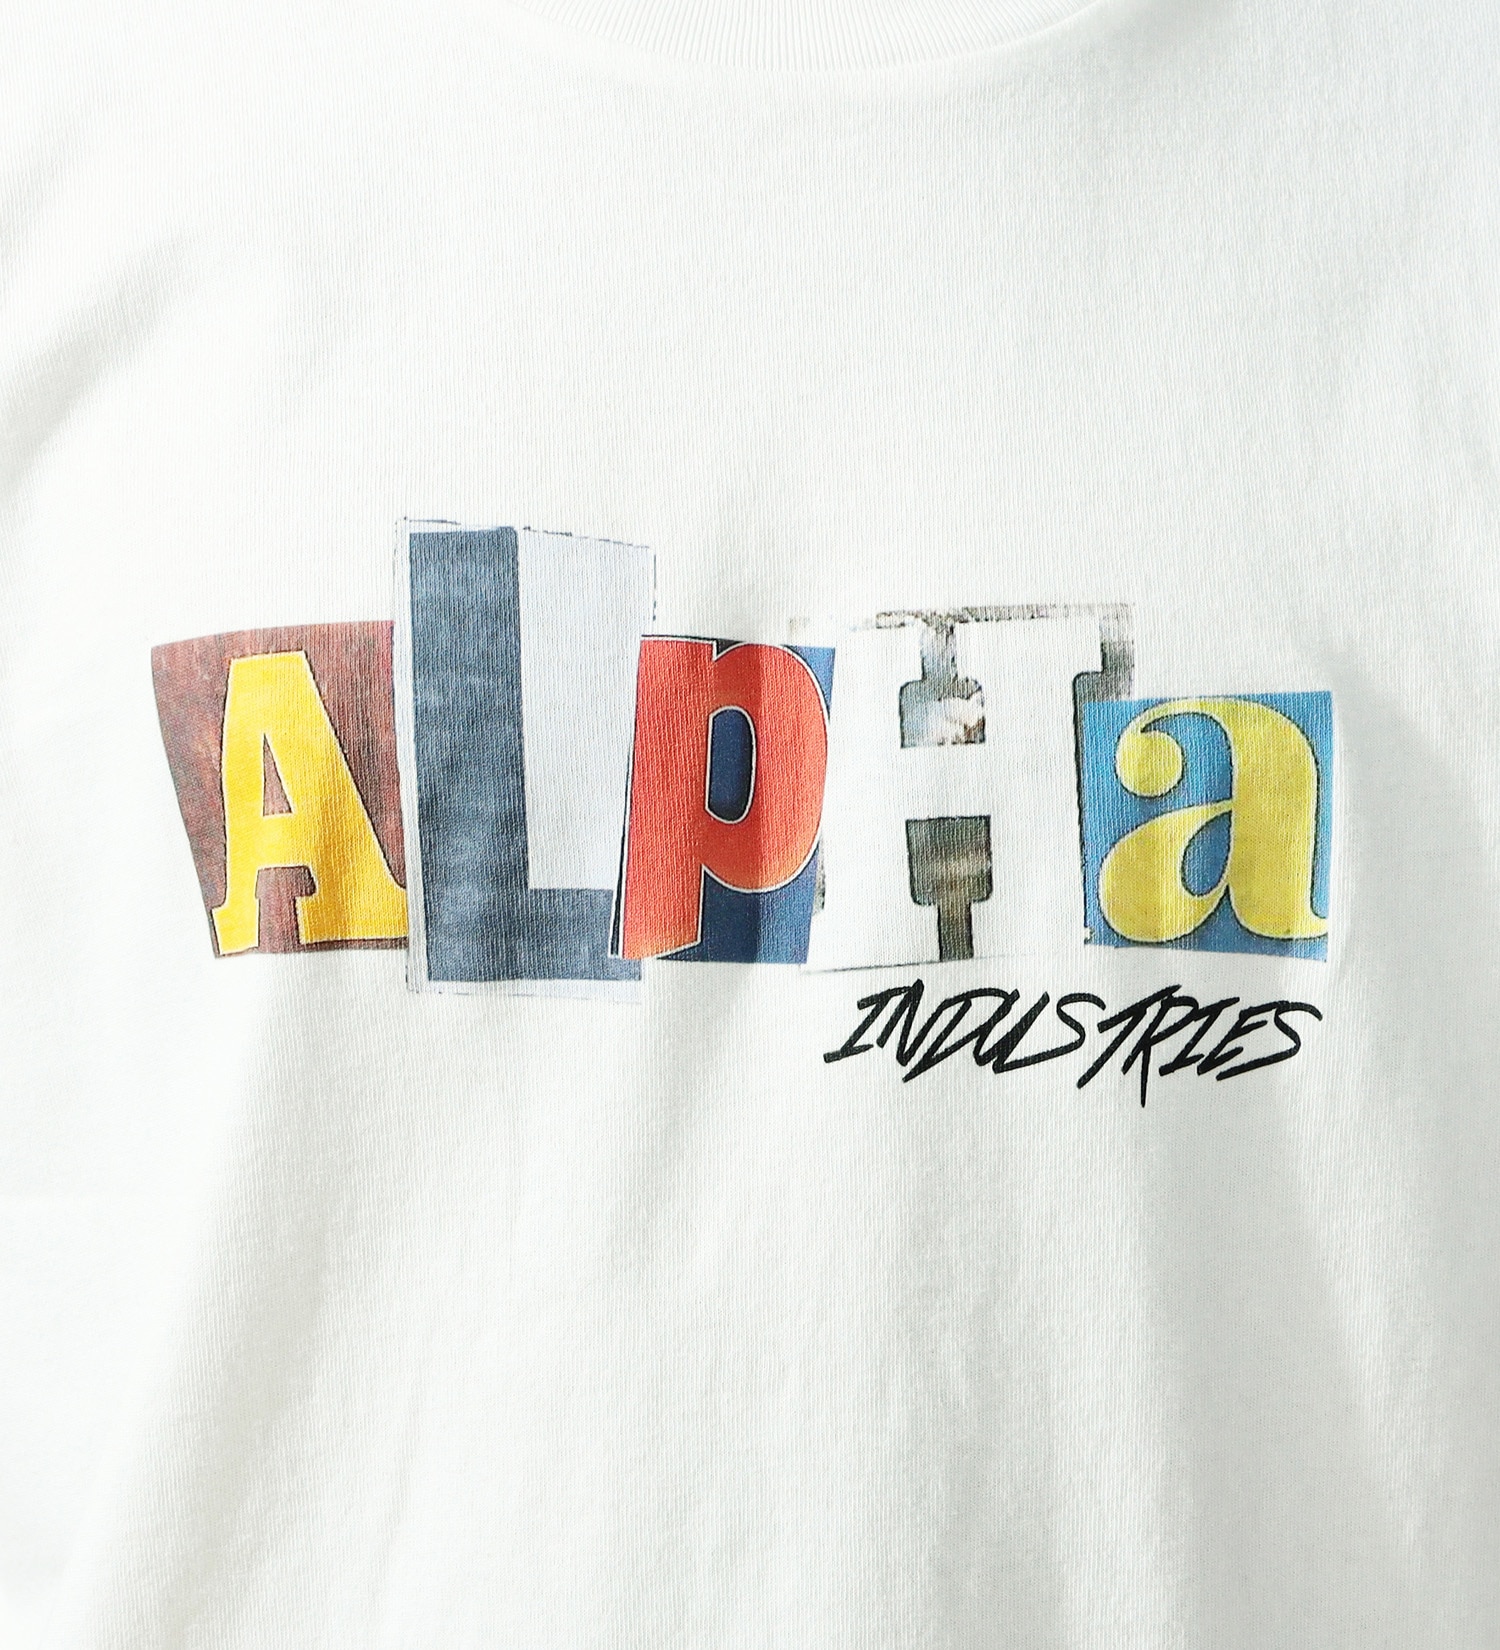 ALPHA(アルファ)のUSグラフィック プリントＴシャツ 半袖 (COLLAGE)|トップス/Tシャツ/カットソー/メンズ|ホワイト